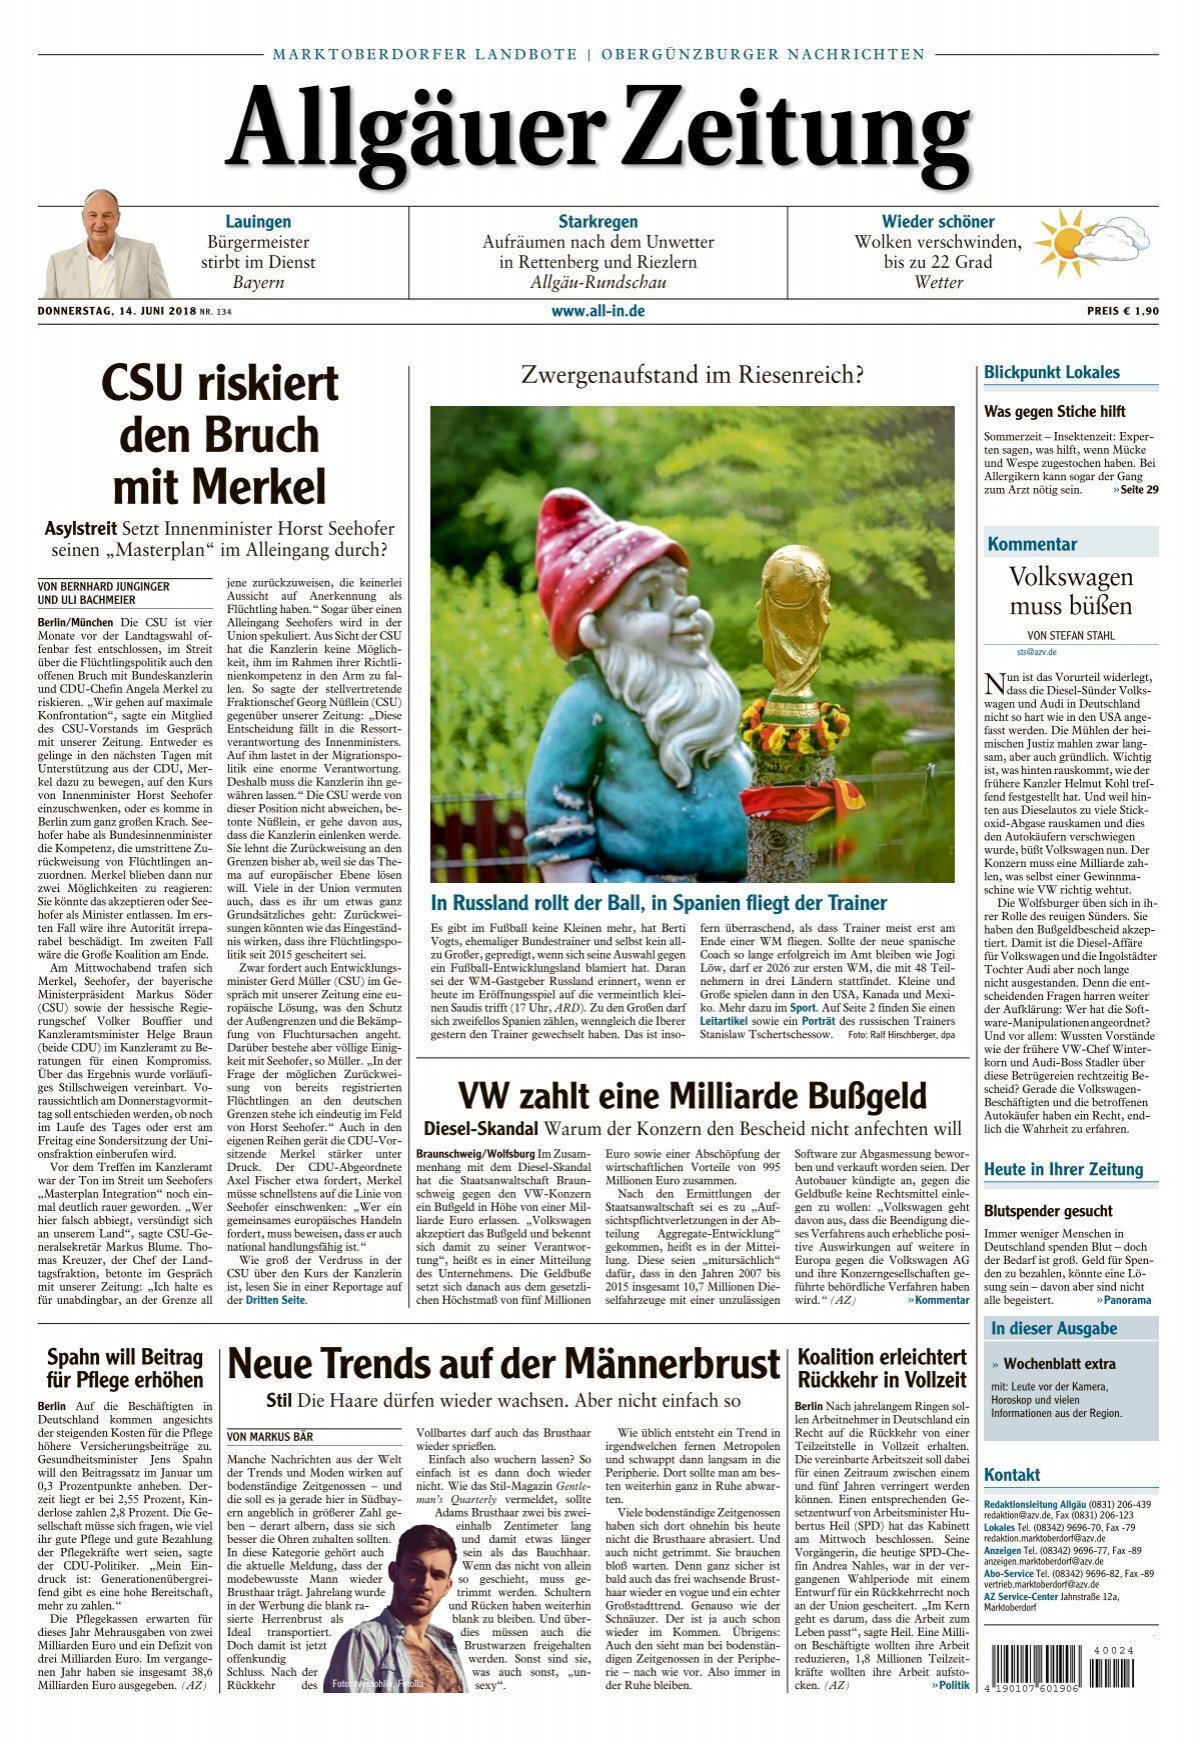 Allgäuer Zeitung Marktoberdorf vom 14. 2018 Juni